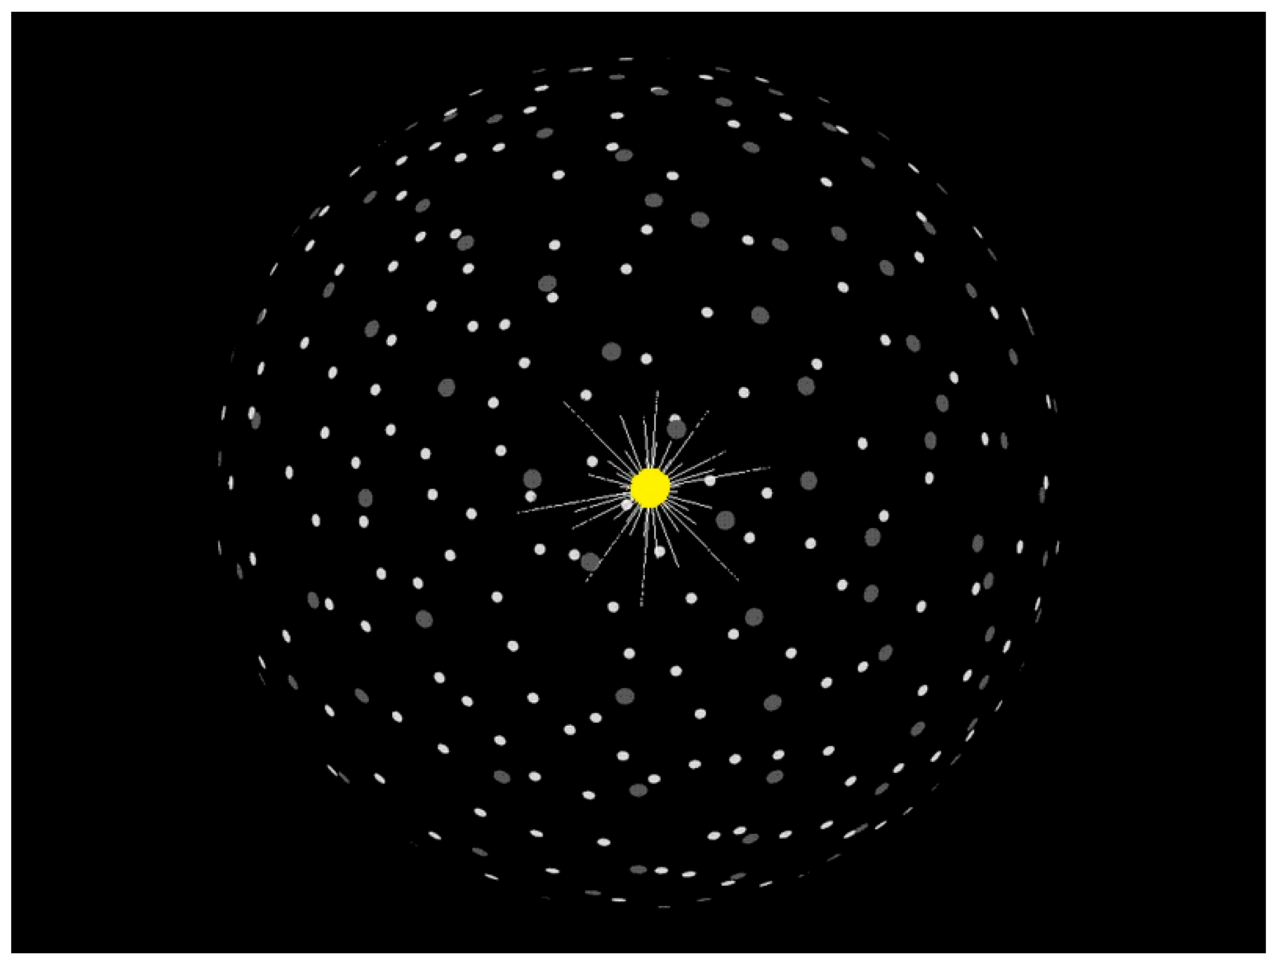 Esfera de Dyson arranjada como satélites individuais (enxame)